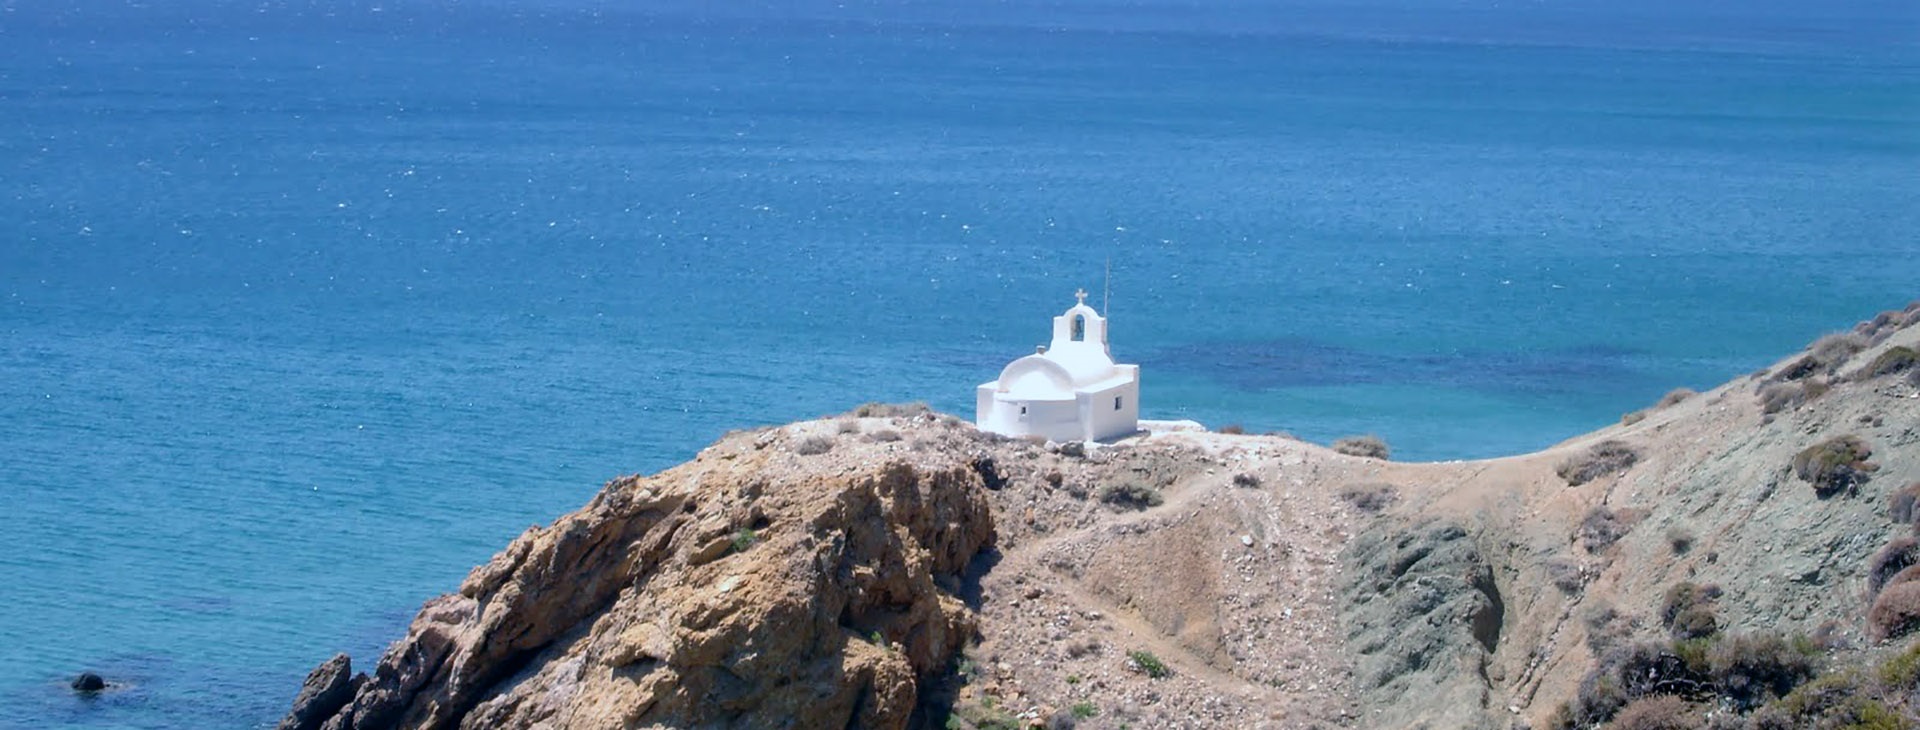 L'isola di Anafi in Grecia